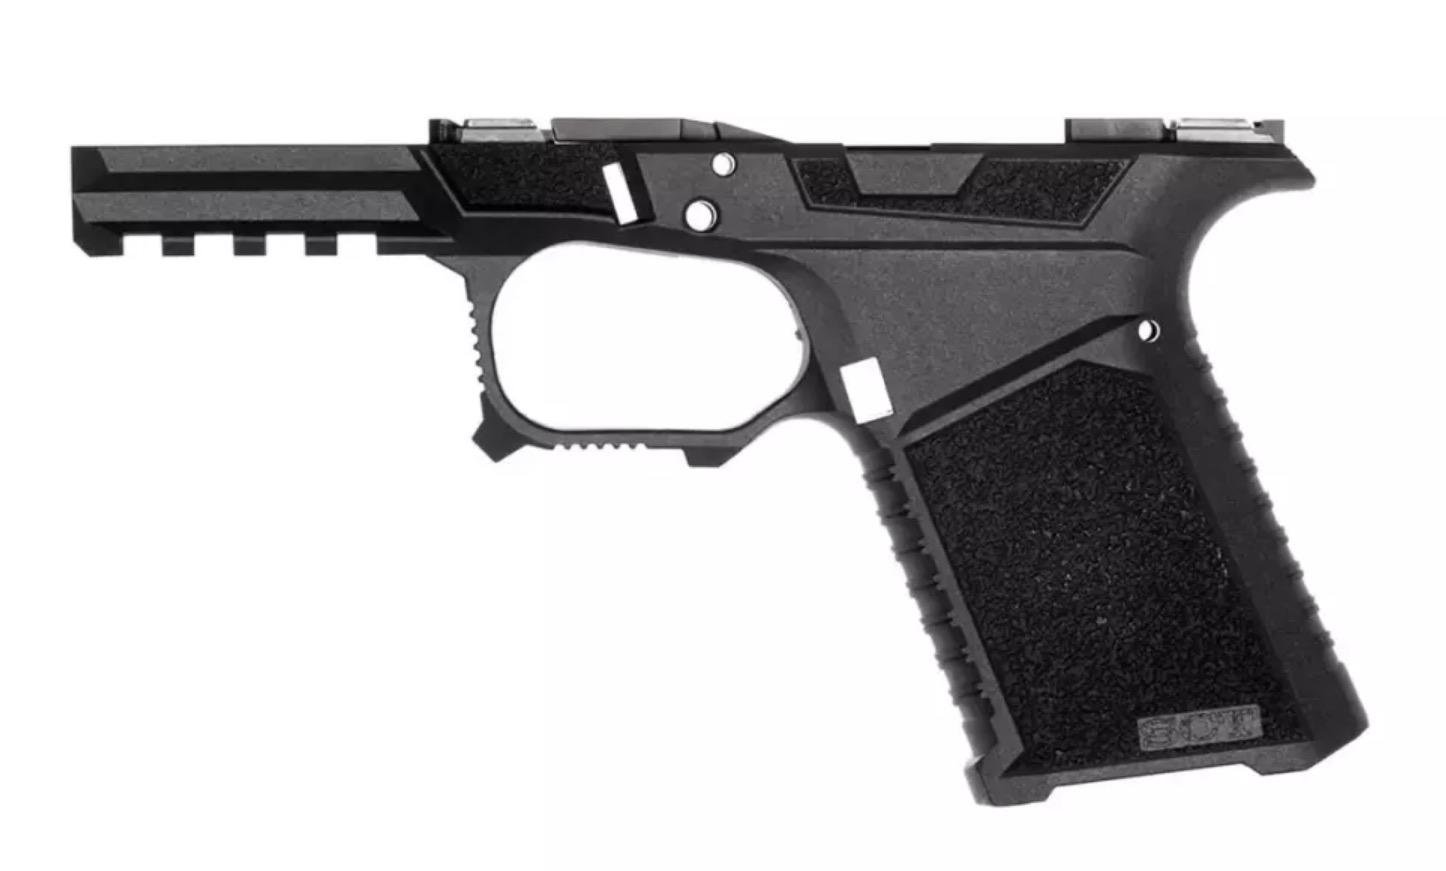 SCT 19 Frame for Glock 19 - $49.99